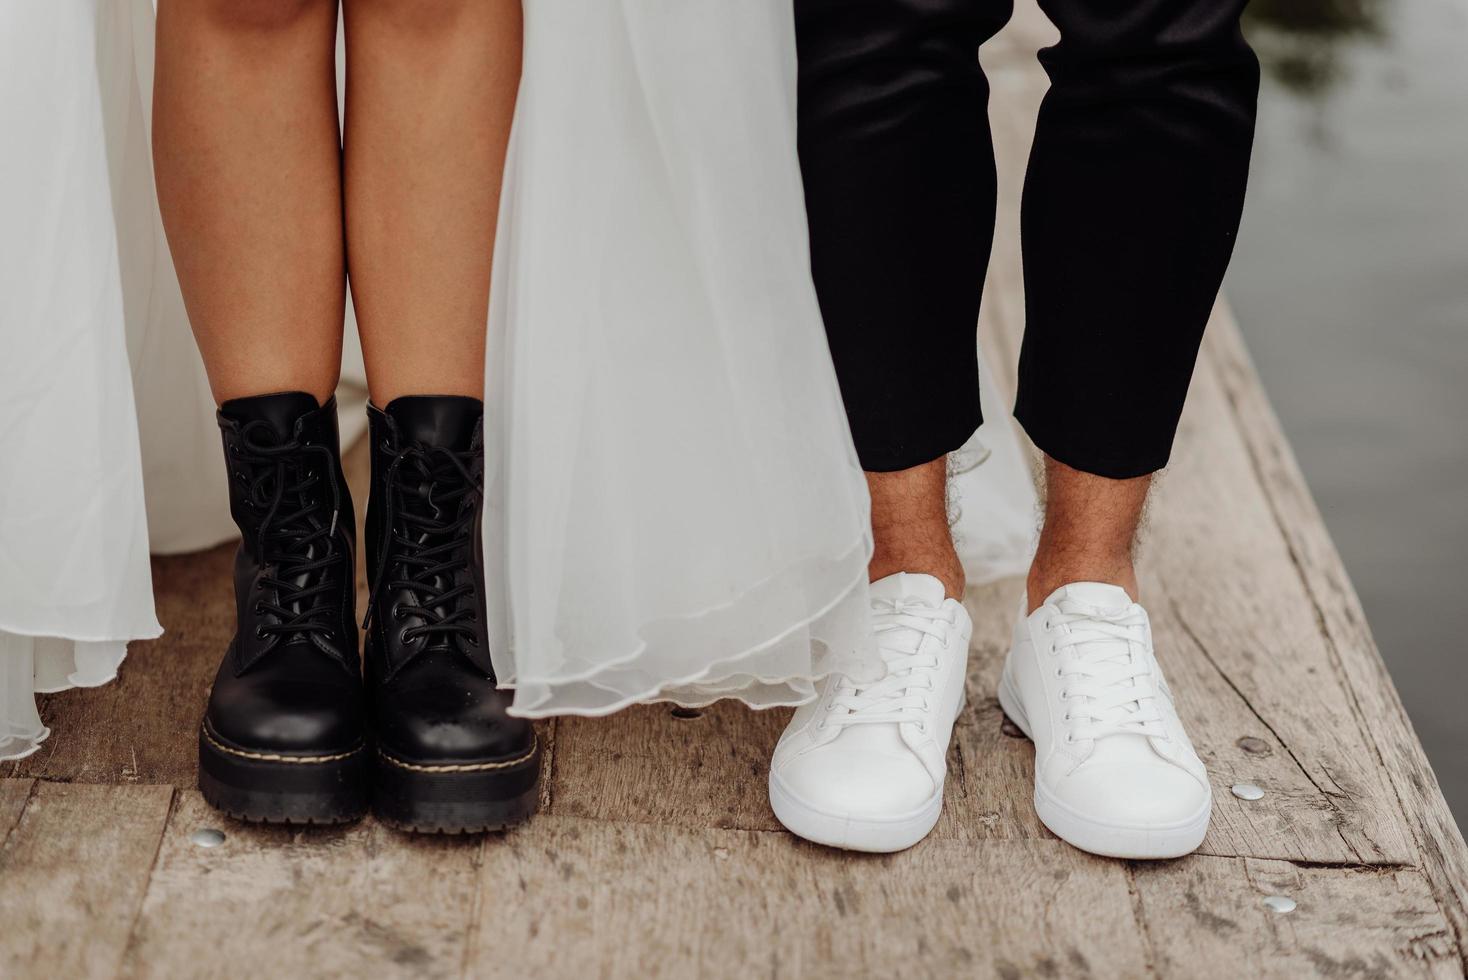 Vista frontal de los pies de la pareja de novios de pie sobre el puente de madera. Vista frontal de zapatos blancos y negros. foto